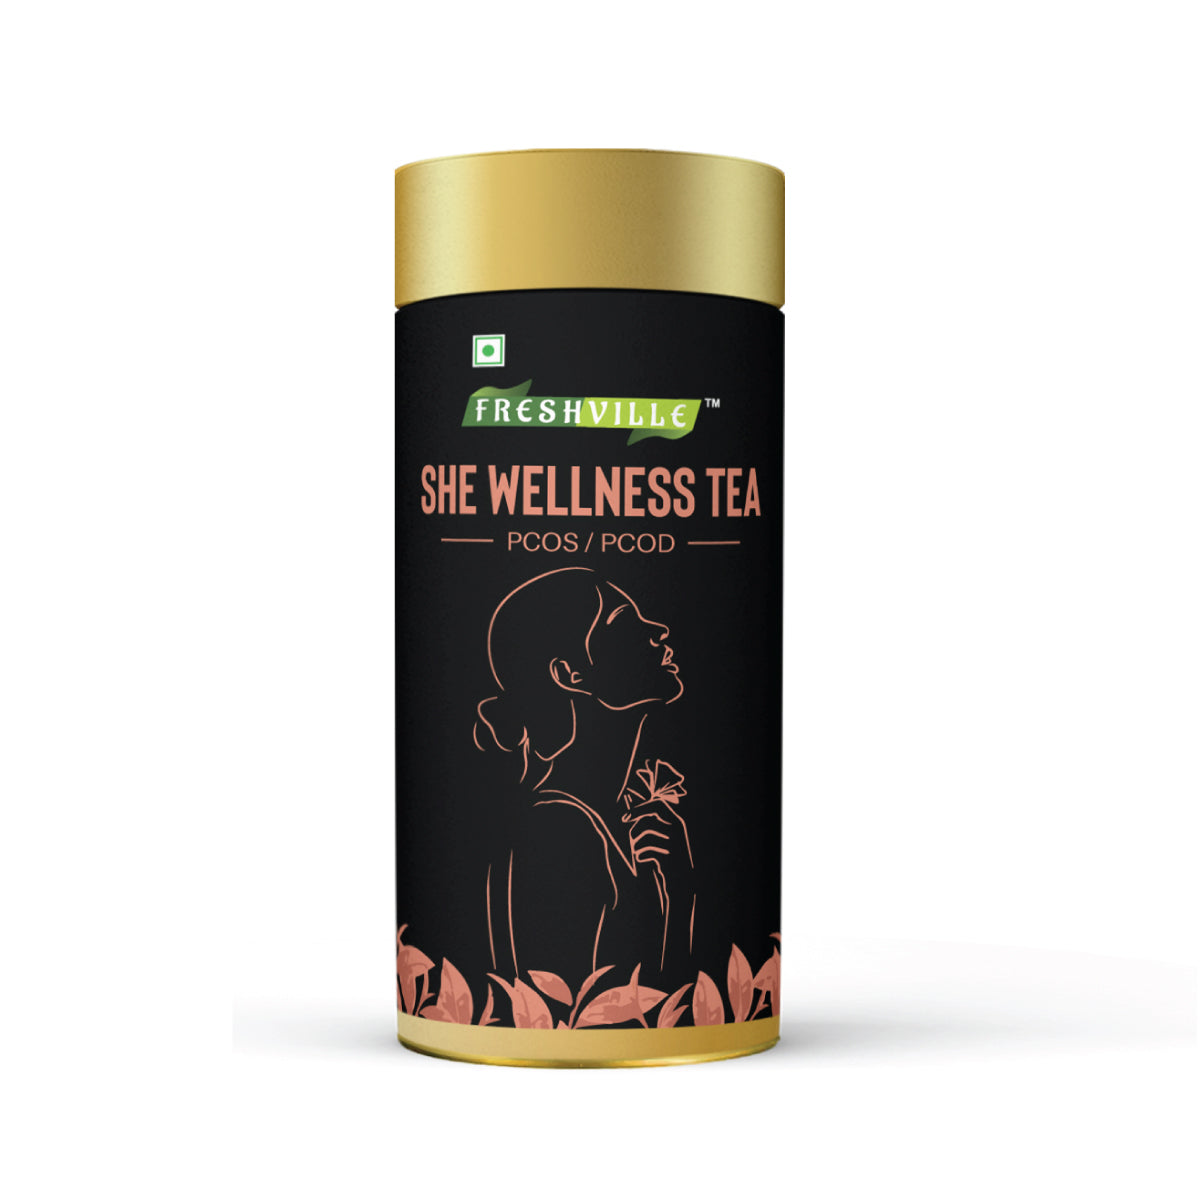 Freshville She Wellness Tea